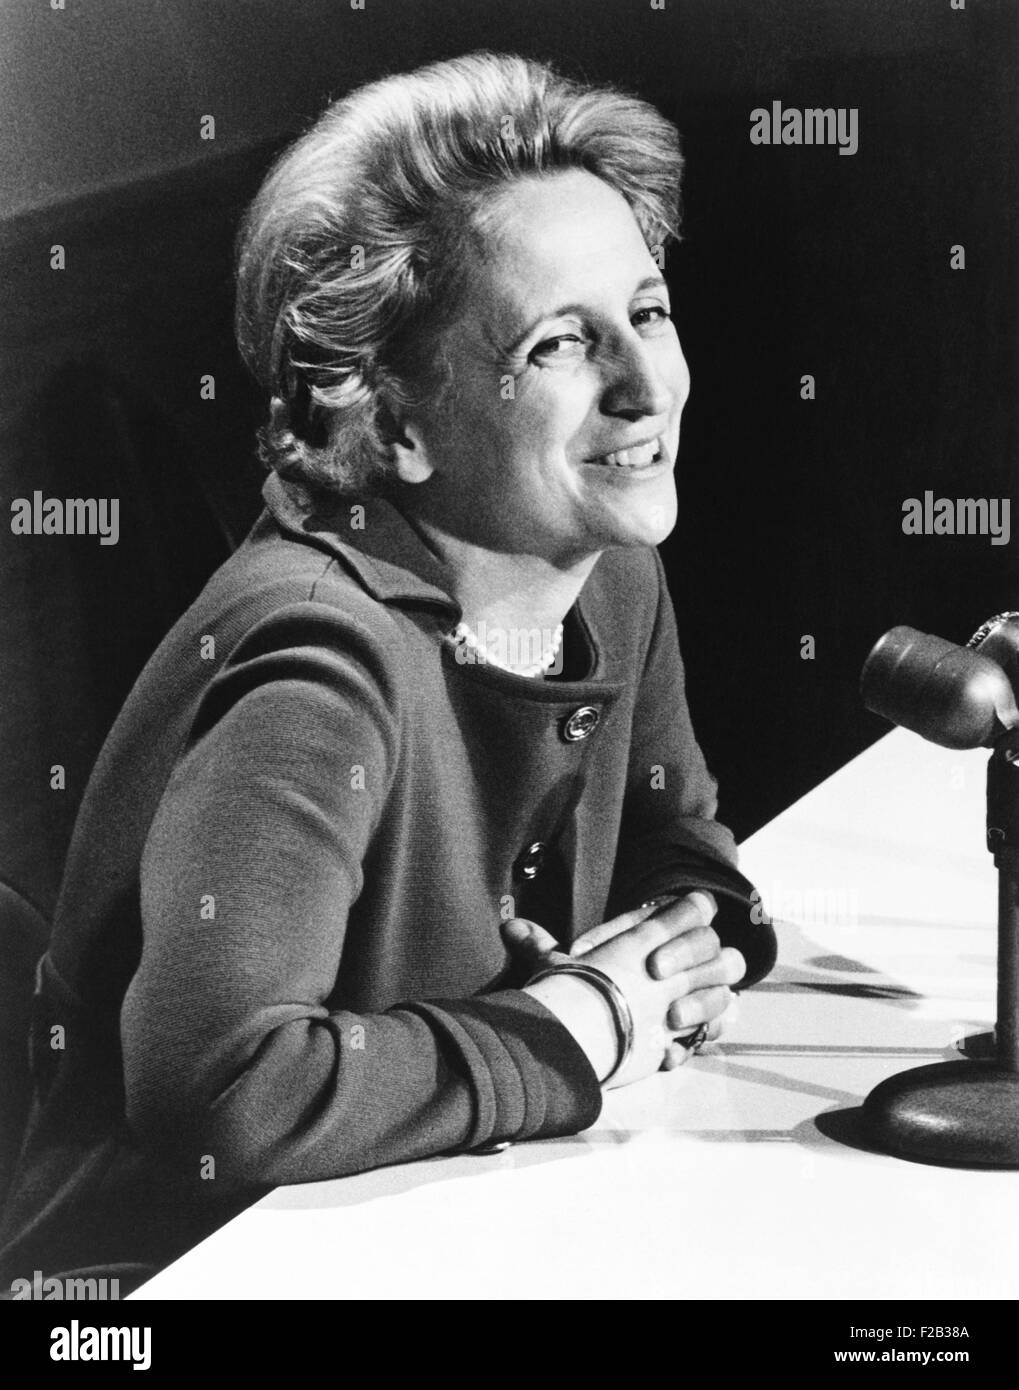 Margaret Truman Daniel, Autor einer neuen Biografie ihres Vaters, ehemaliger Präsident Harry Truman. Dezember 1972. (CSU 2015 7 249) Stockfoto